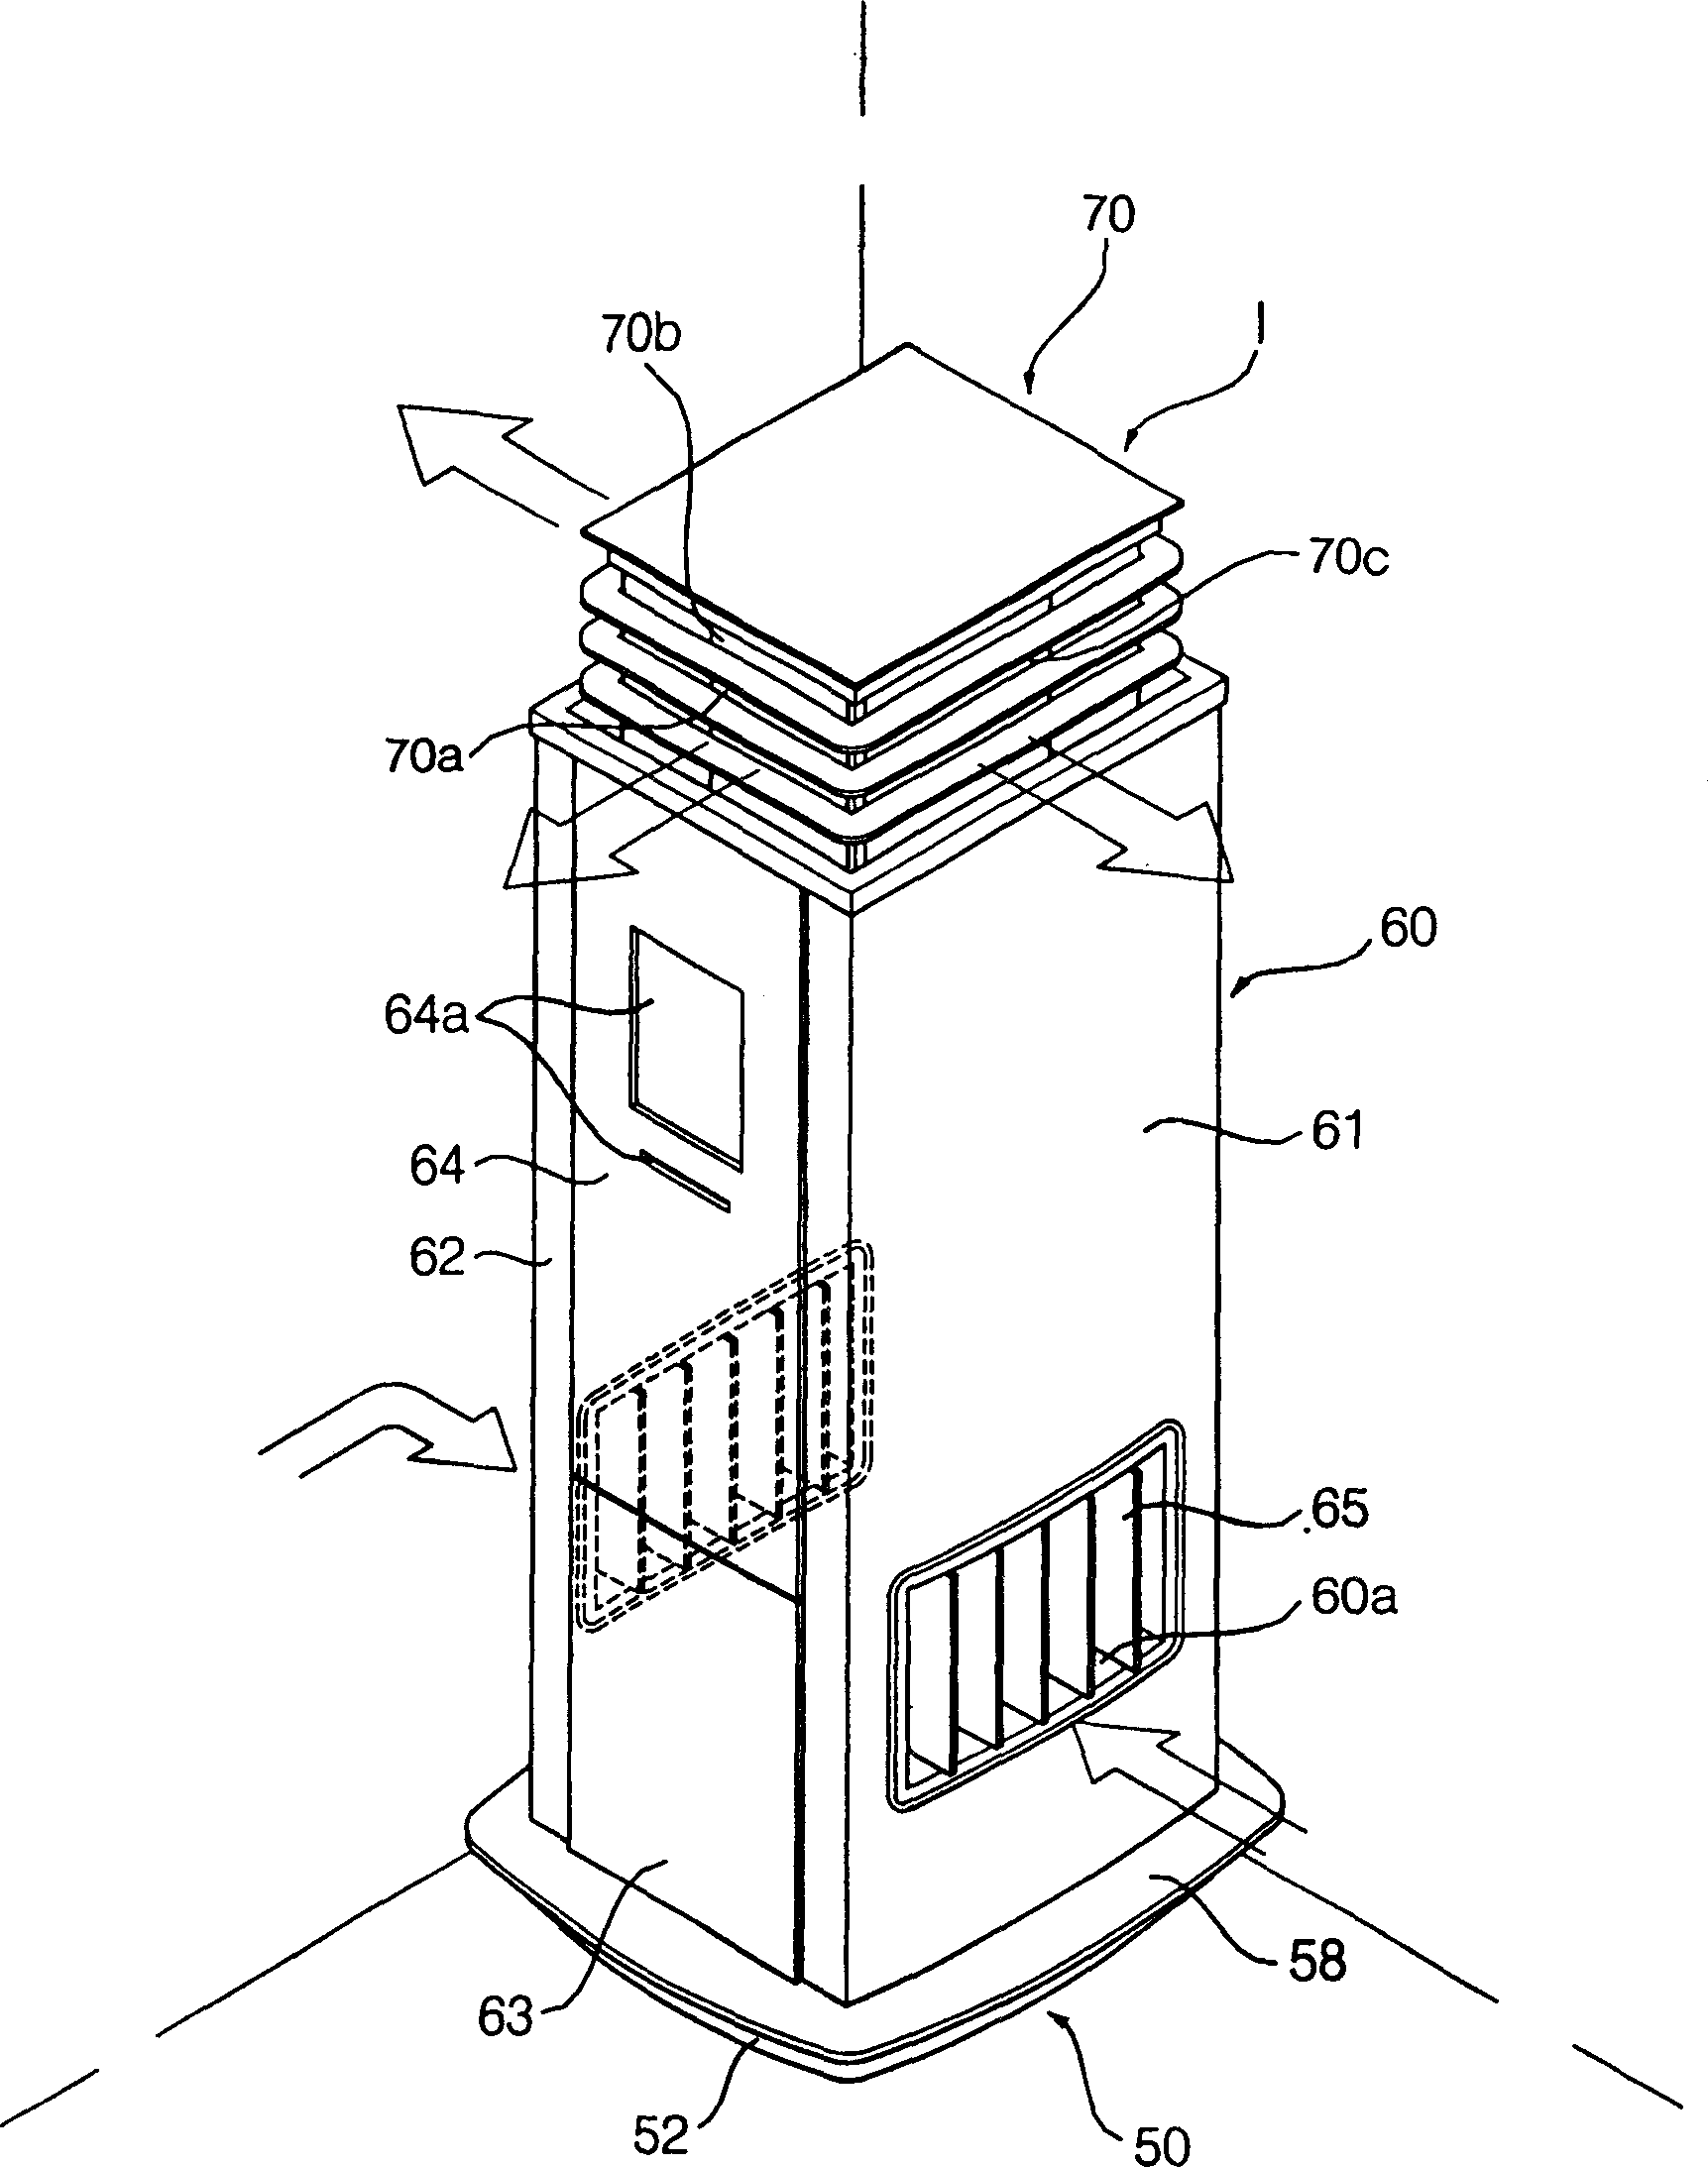 Indoor unit of air conditioner